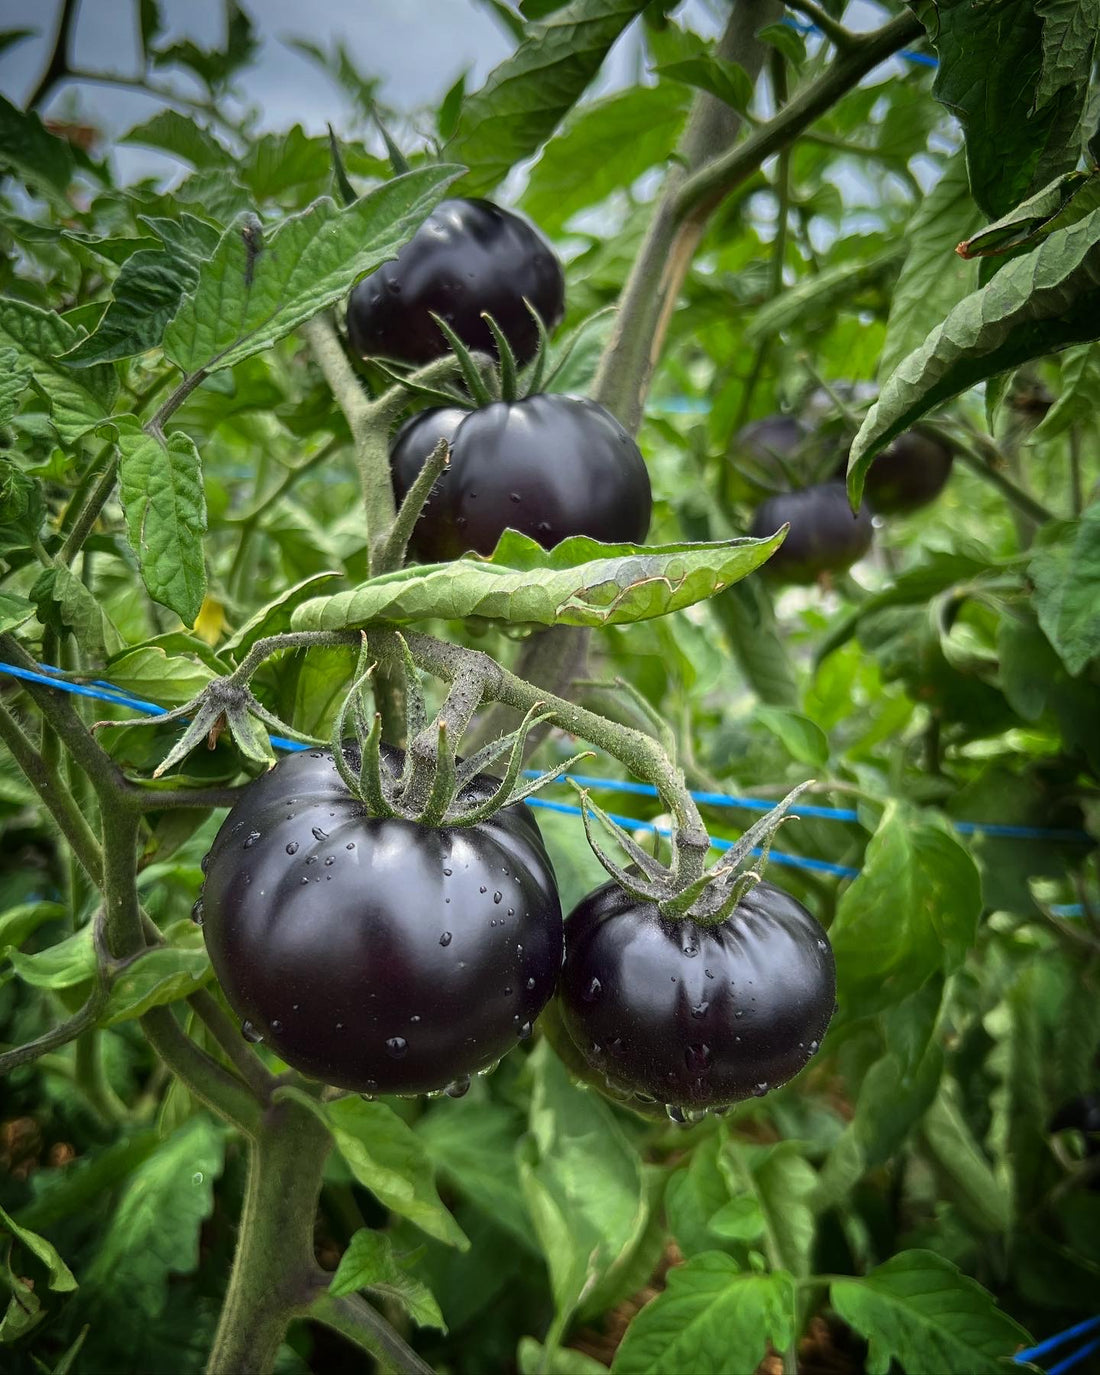 A Tomato Review - Black Beauty